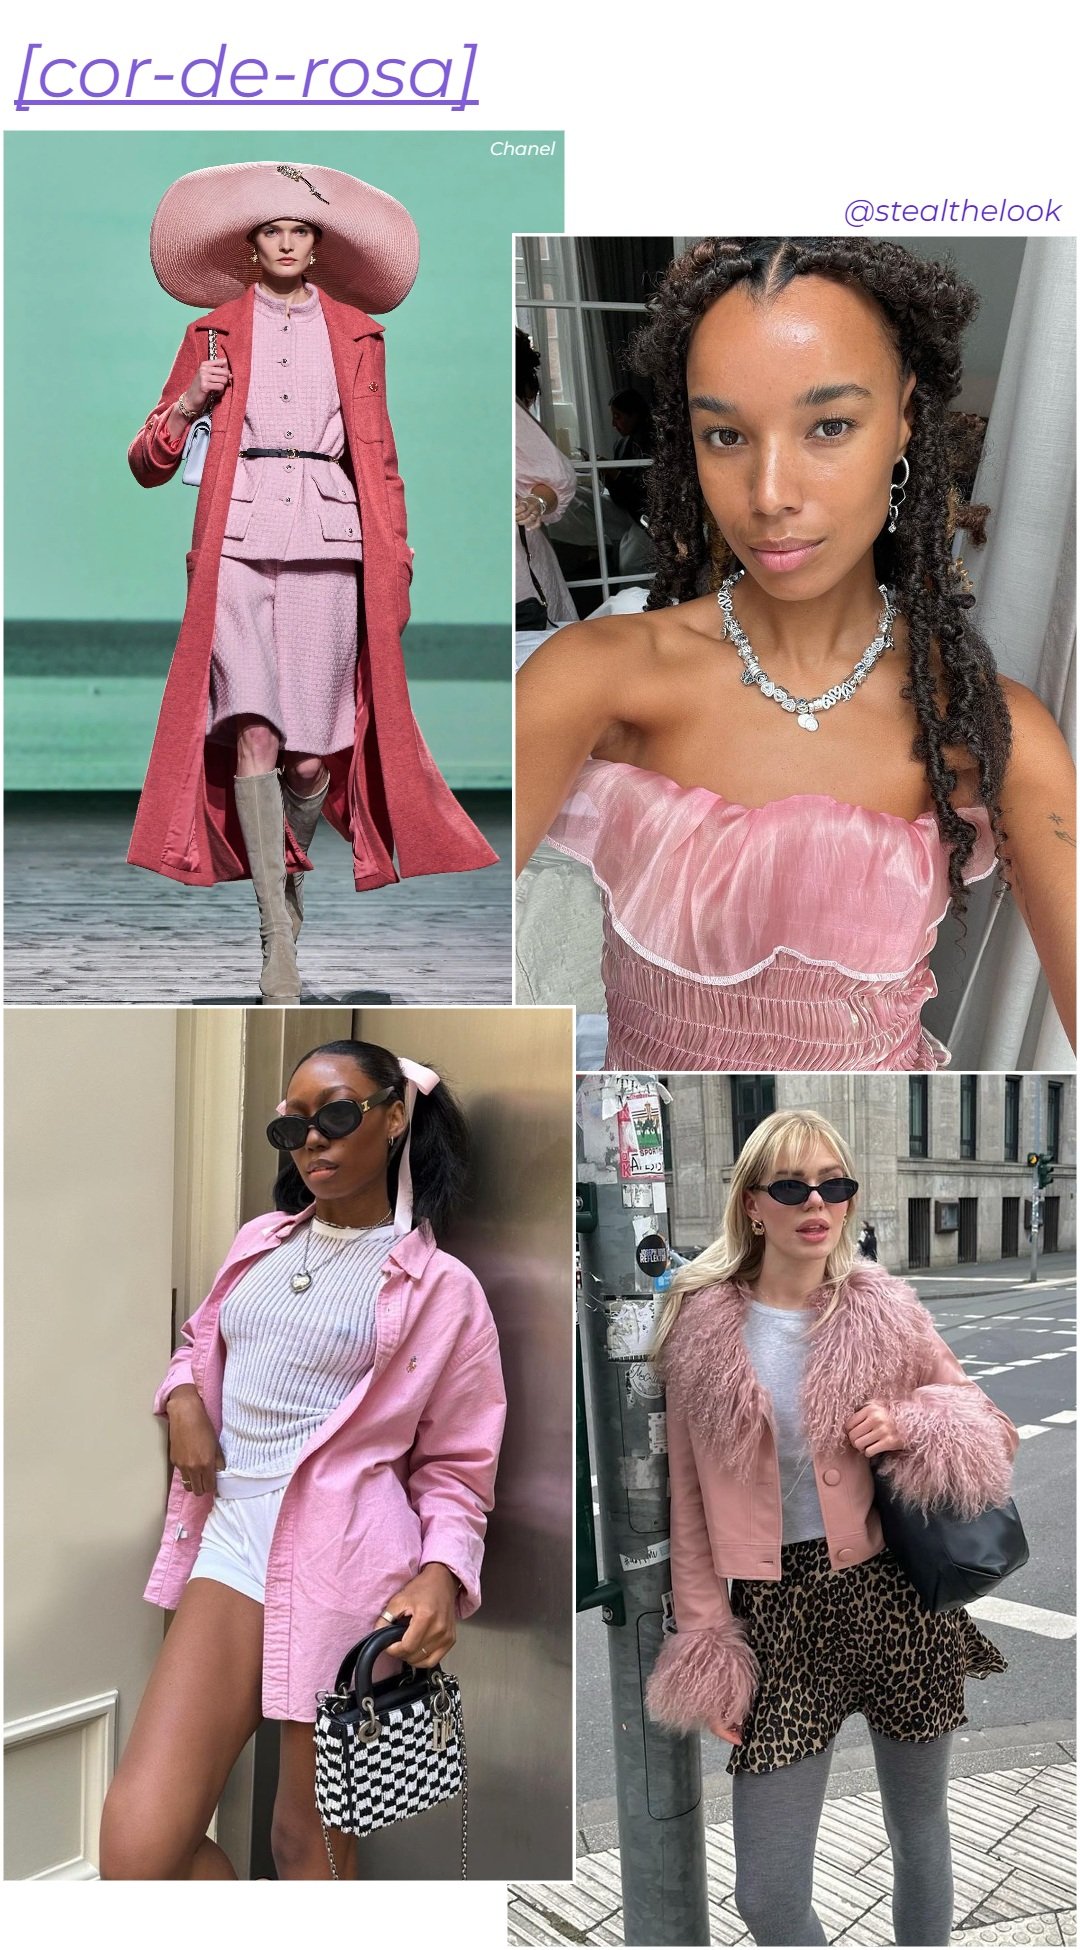 Chanel, @linda.sza, @fiahamelijnck e Chanel McKinsie - roupas diversas em tons de rosa - cores tendência - inverno - colagem de imagens - https://stealthelook.com.br